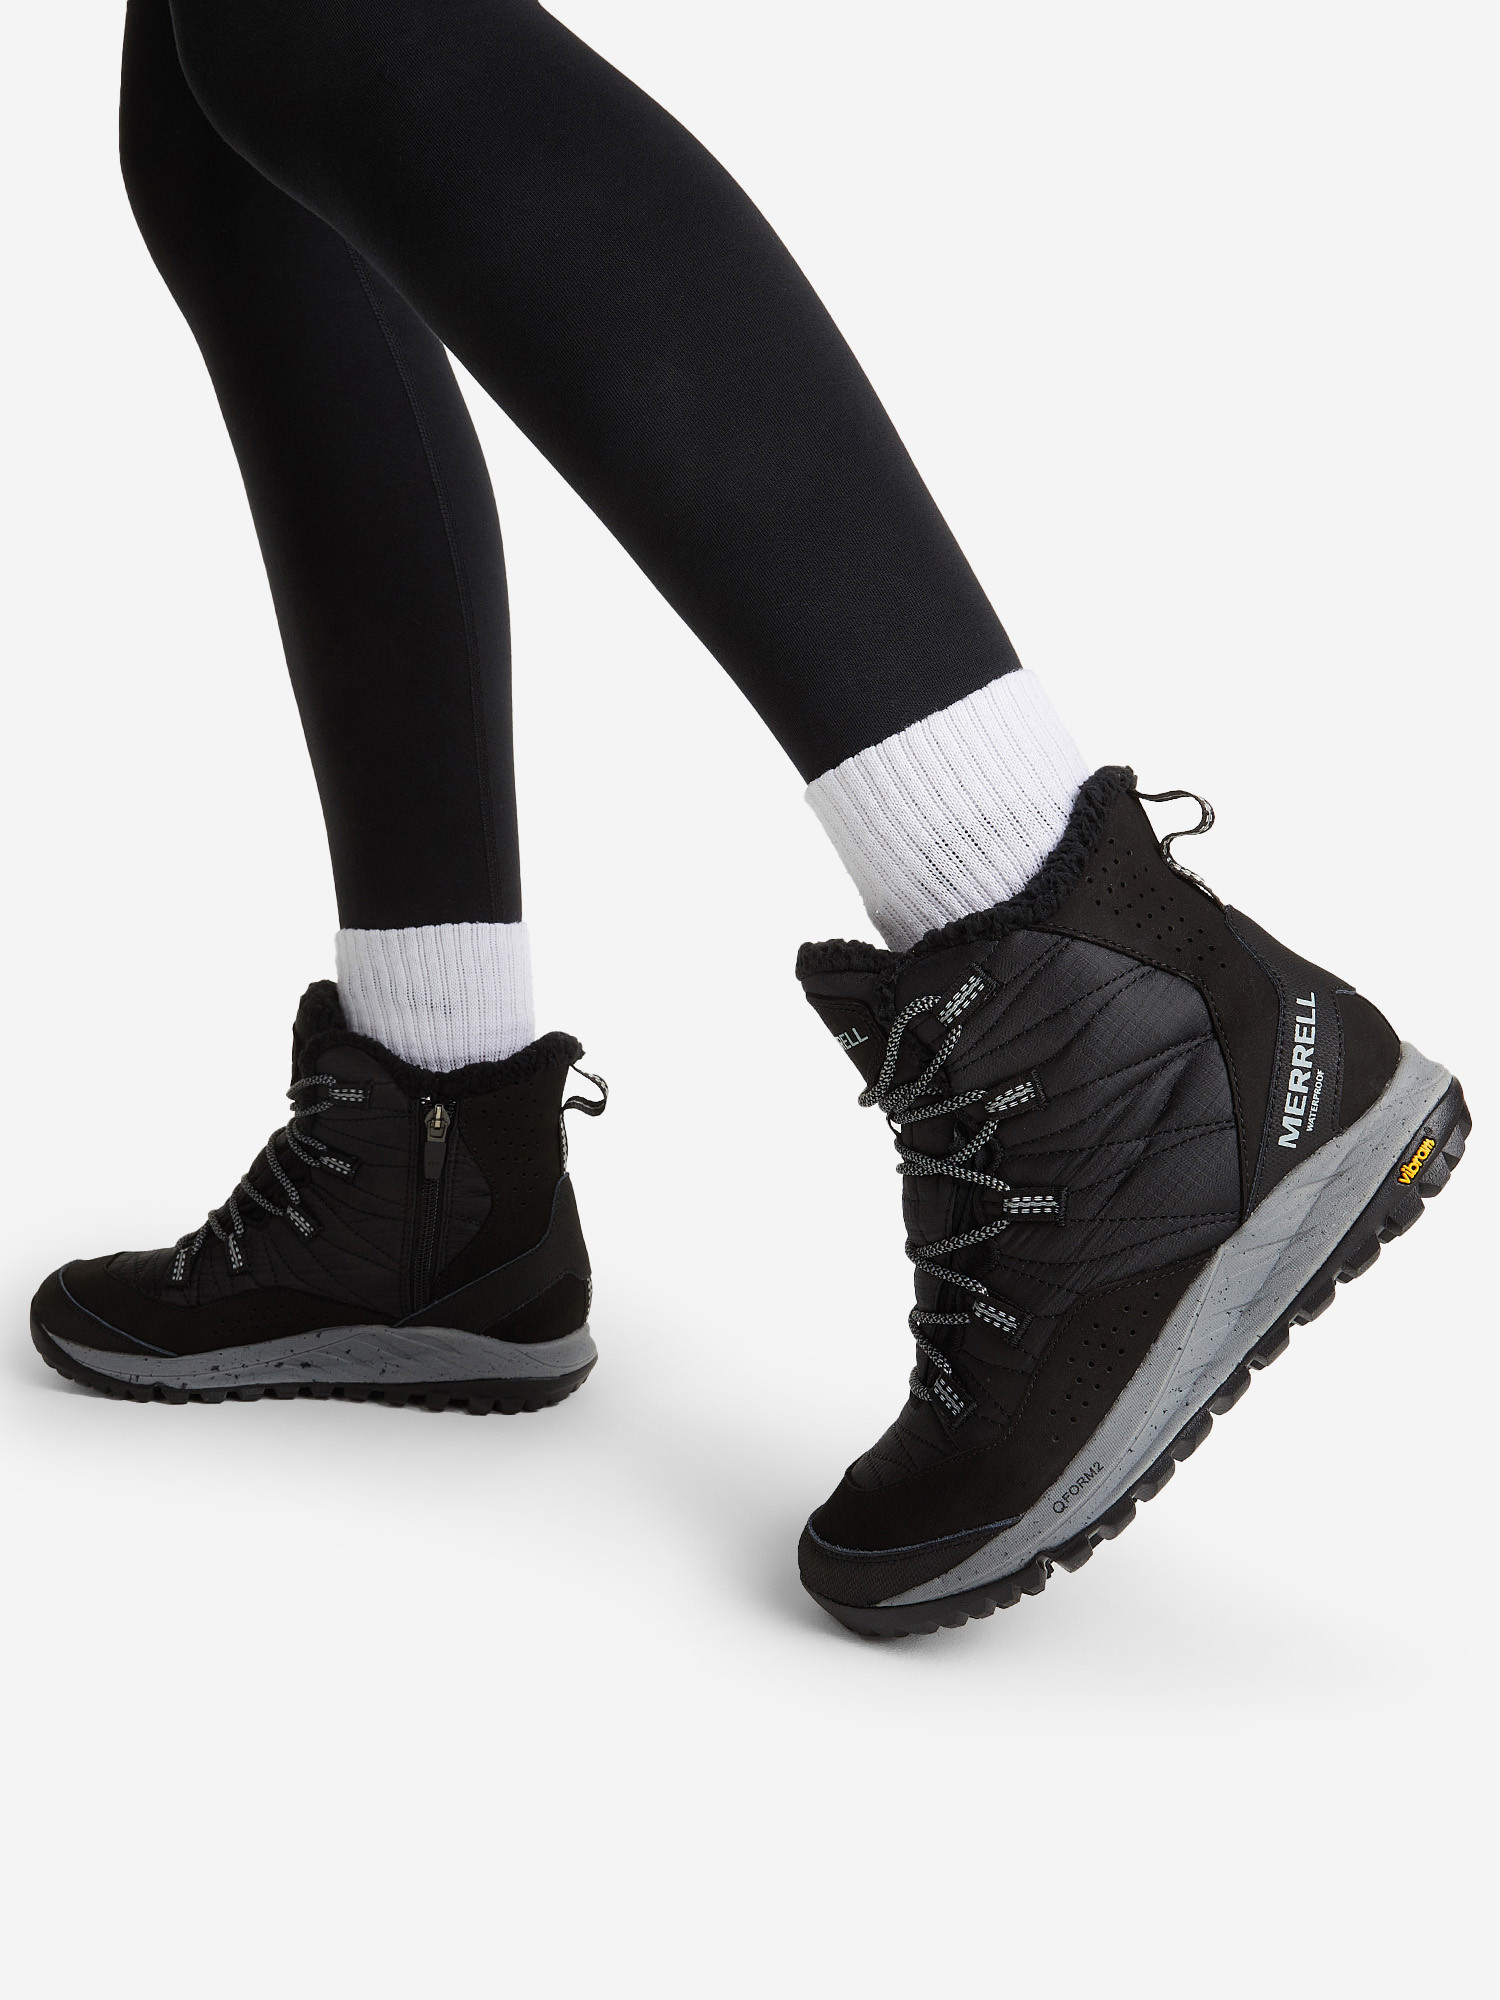 Ботинки утепленные женские Merrell Antora Sneaker Boot